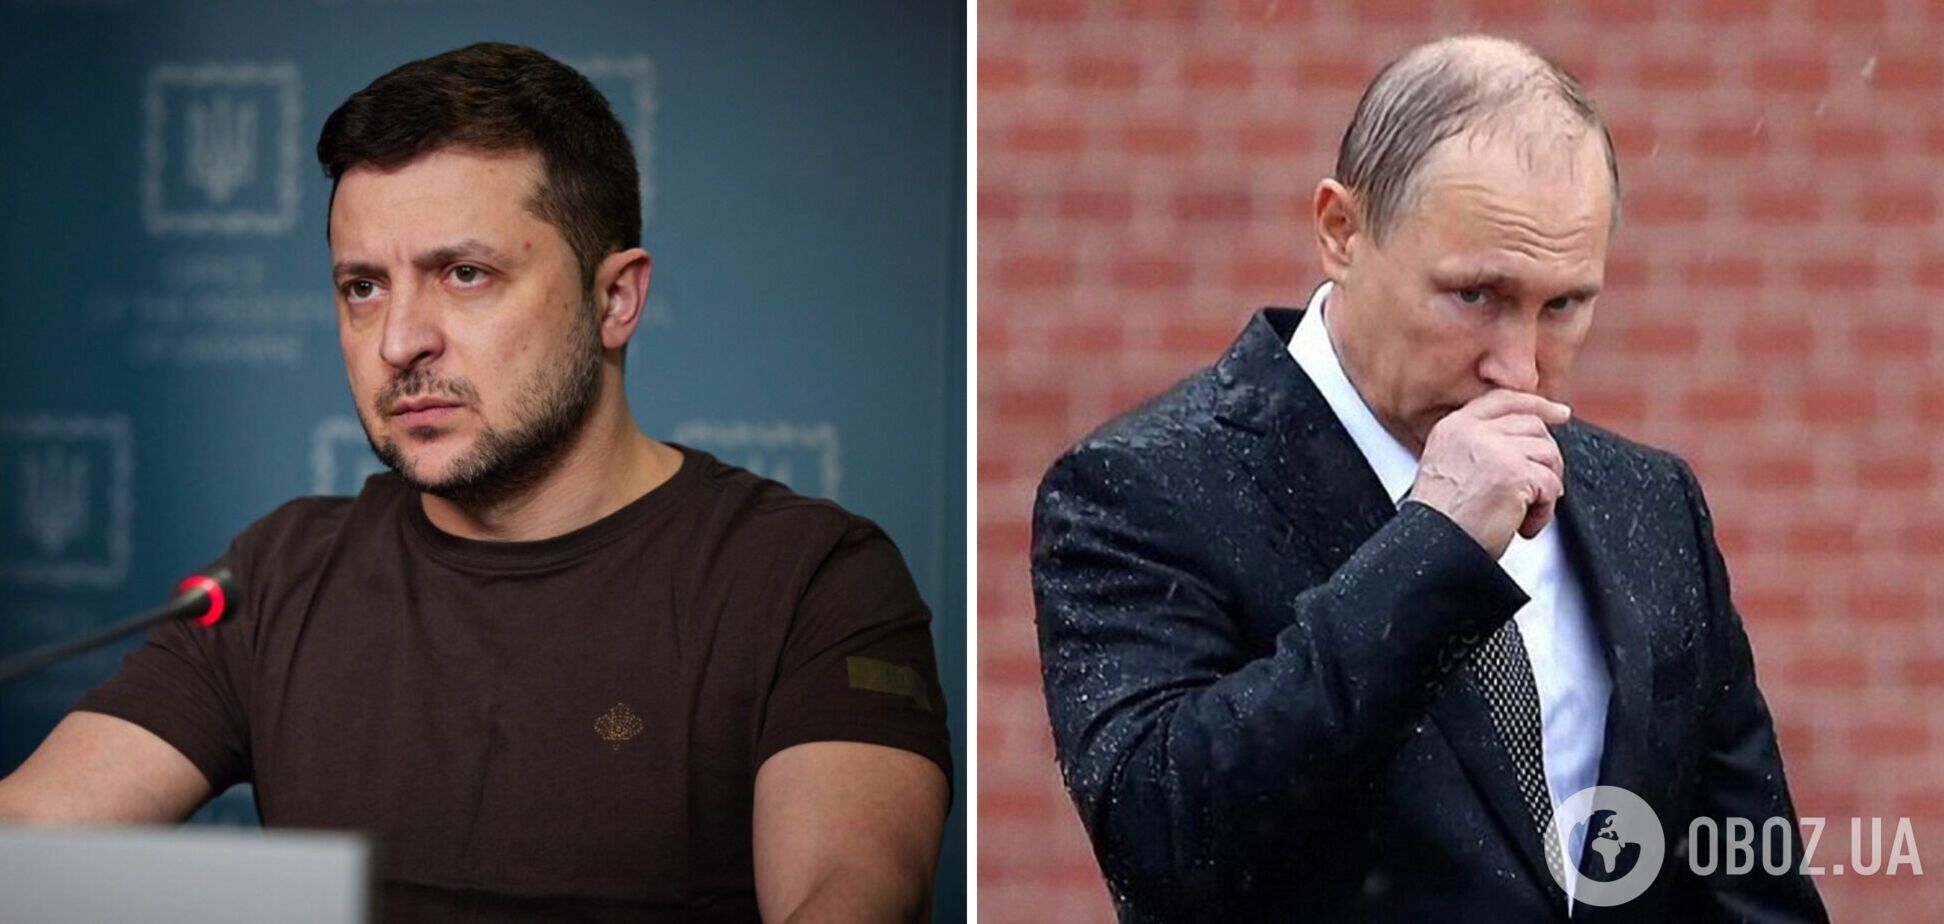 Зеленський назвав 'лякаючими та небезпечними' слова Путіна про 'неонацистів' в Україні